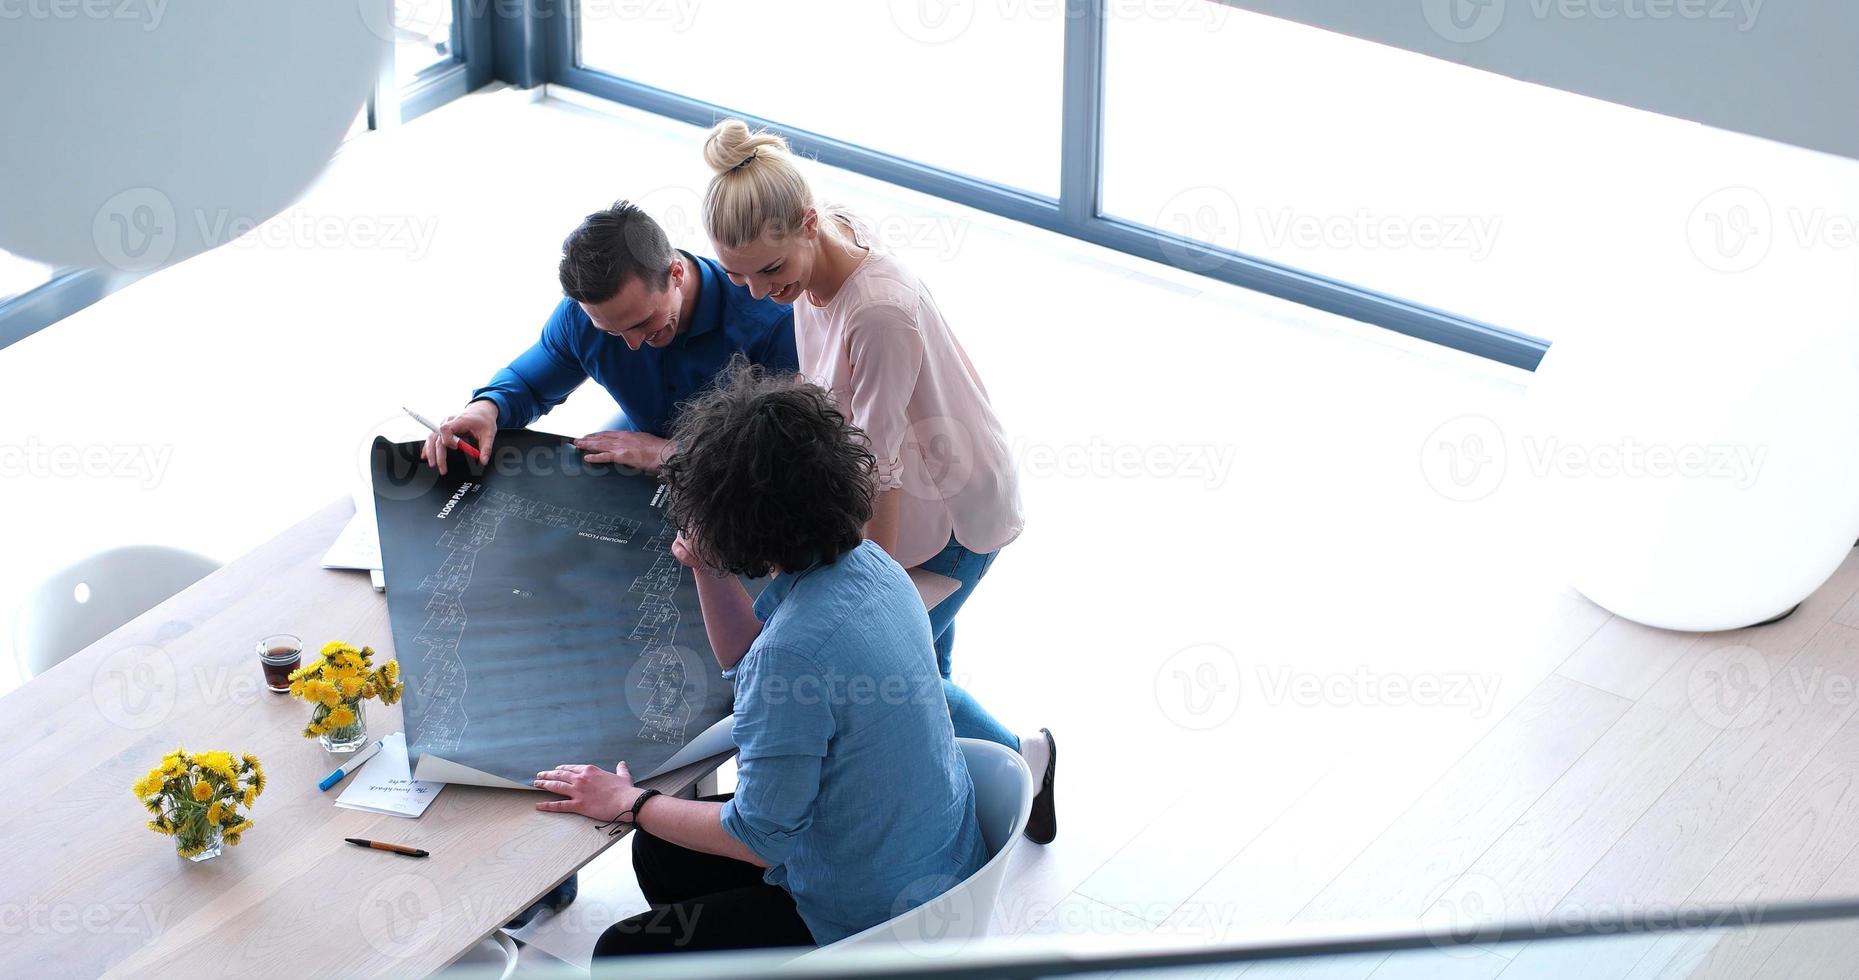 equipe de negócios de inicialização em uma reunião no prédio de escritórios moderno foto